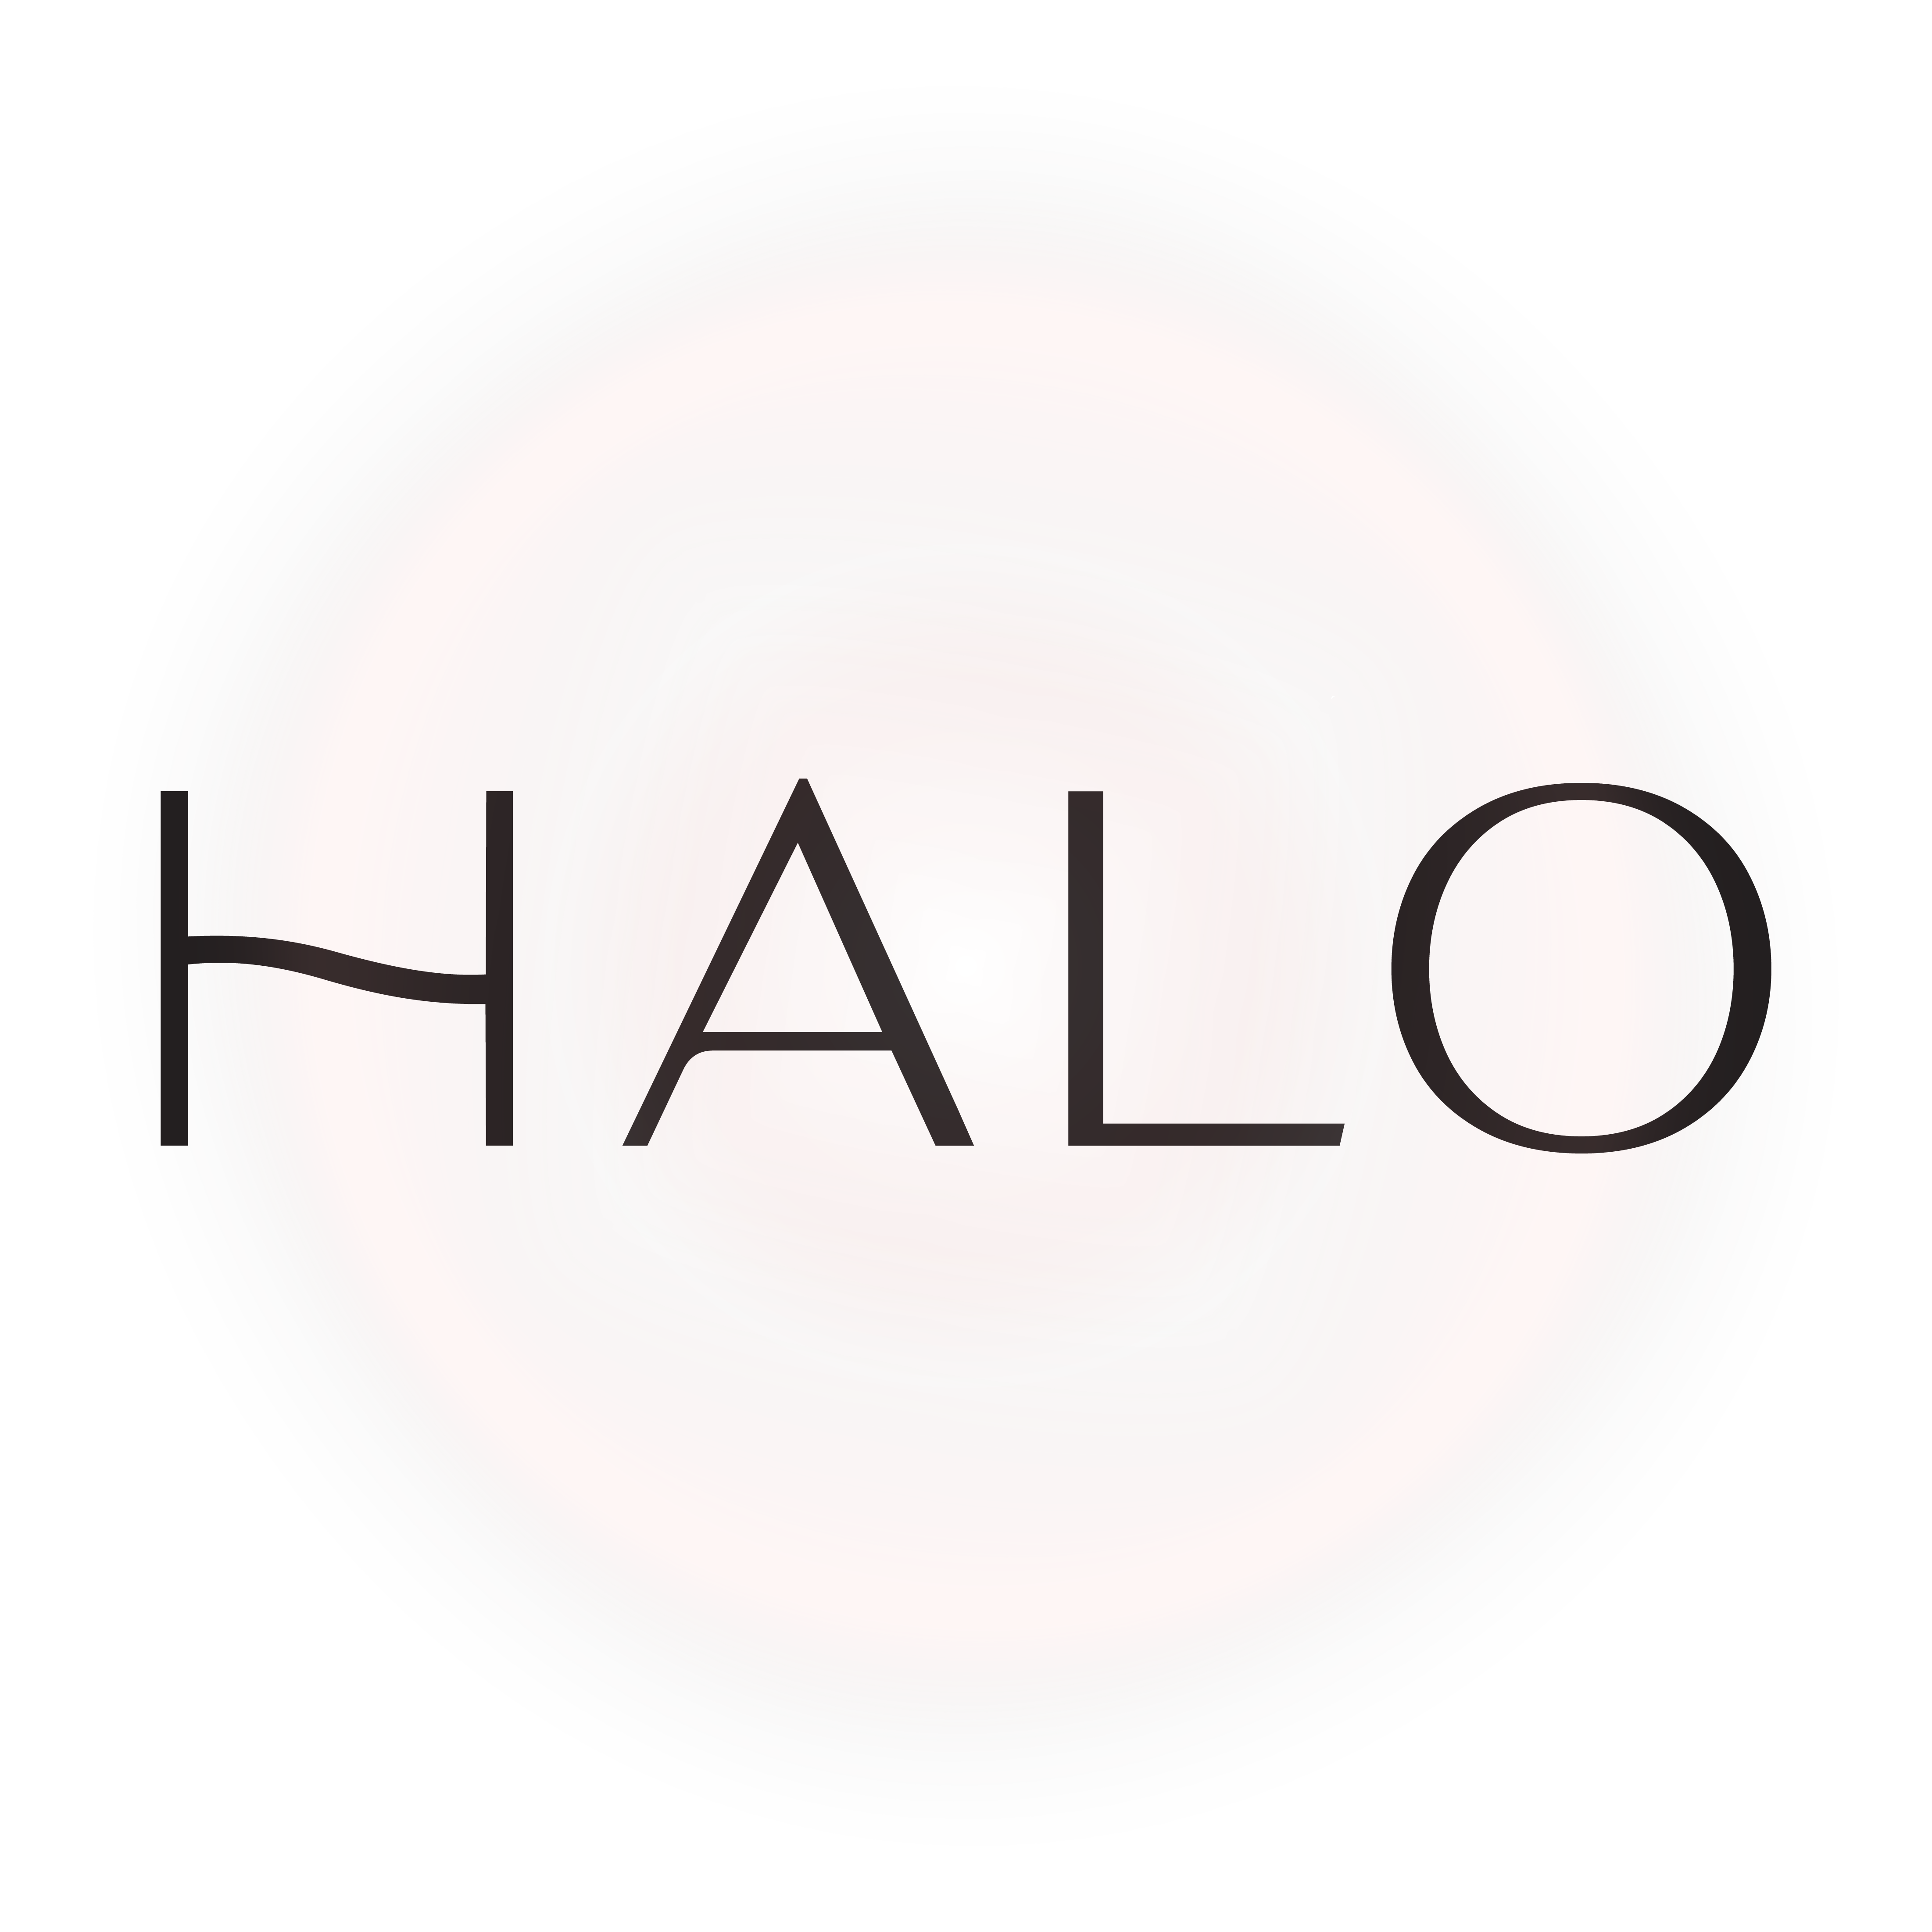 Halo-ს ახალი სახელოსნო და შოურუმი